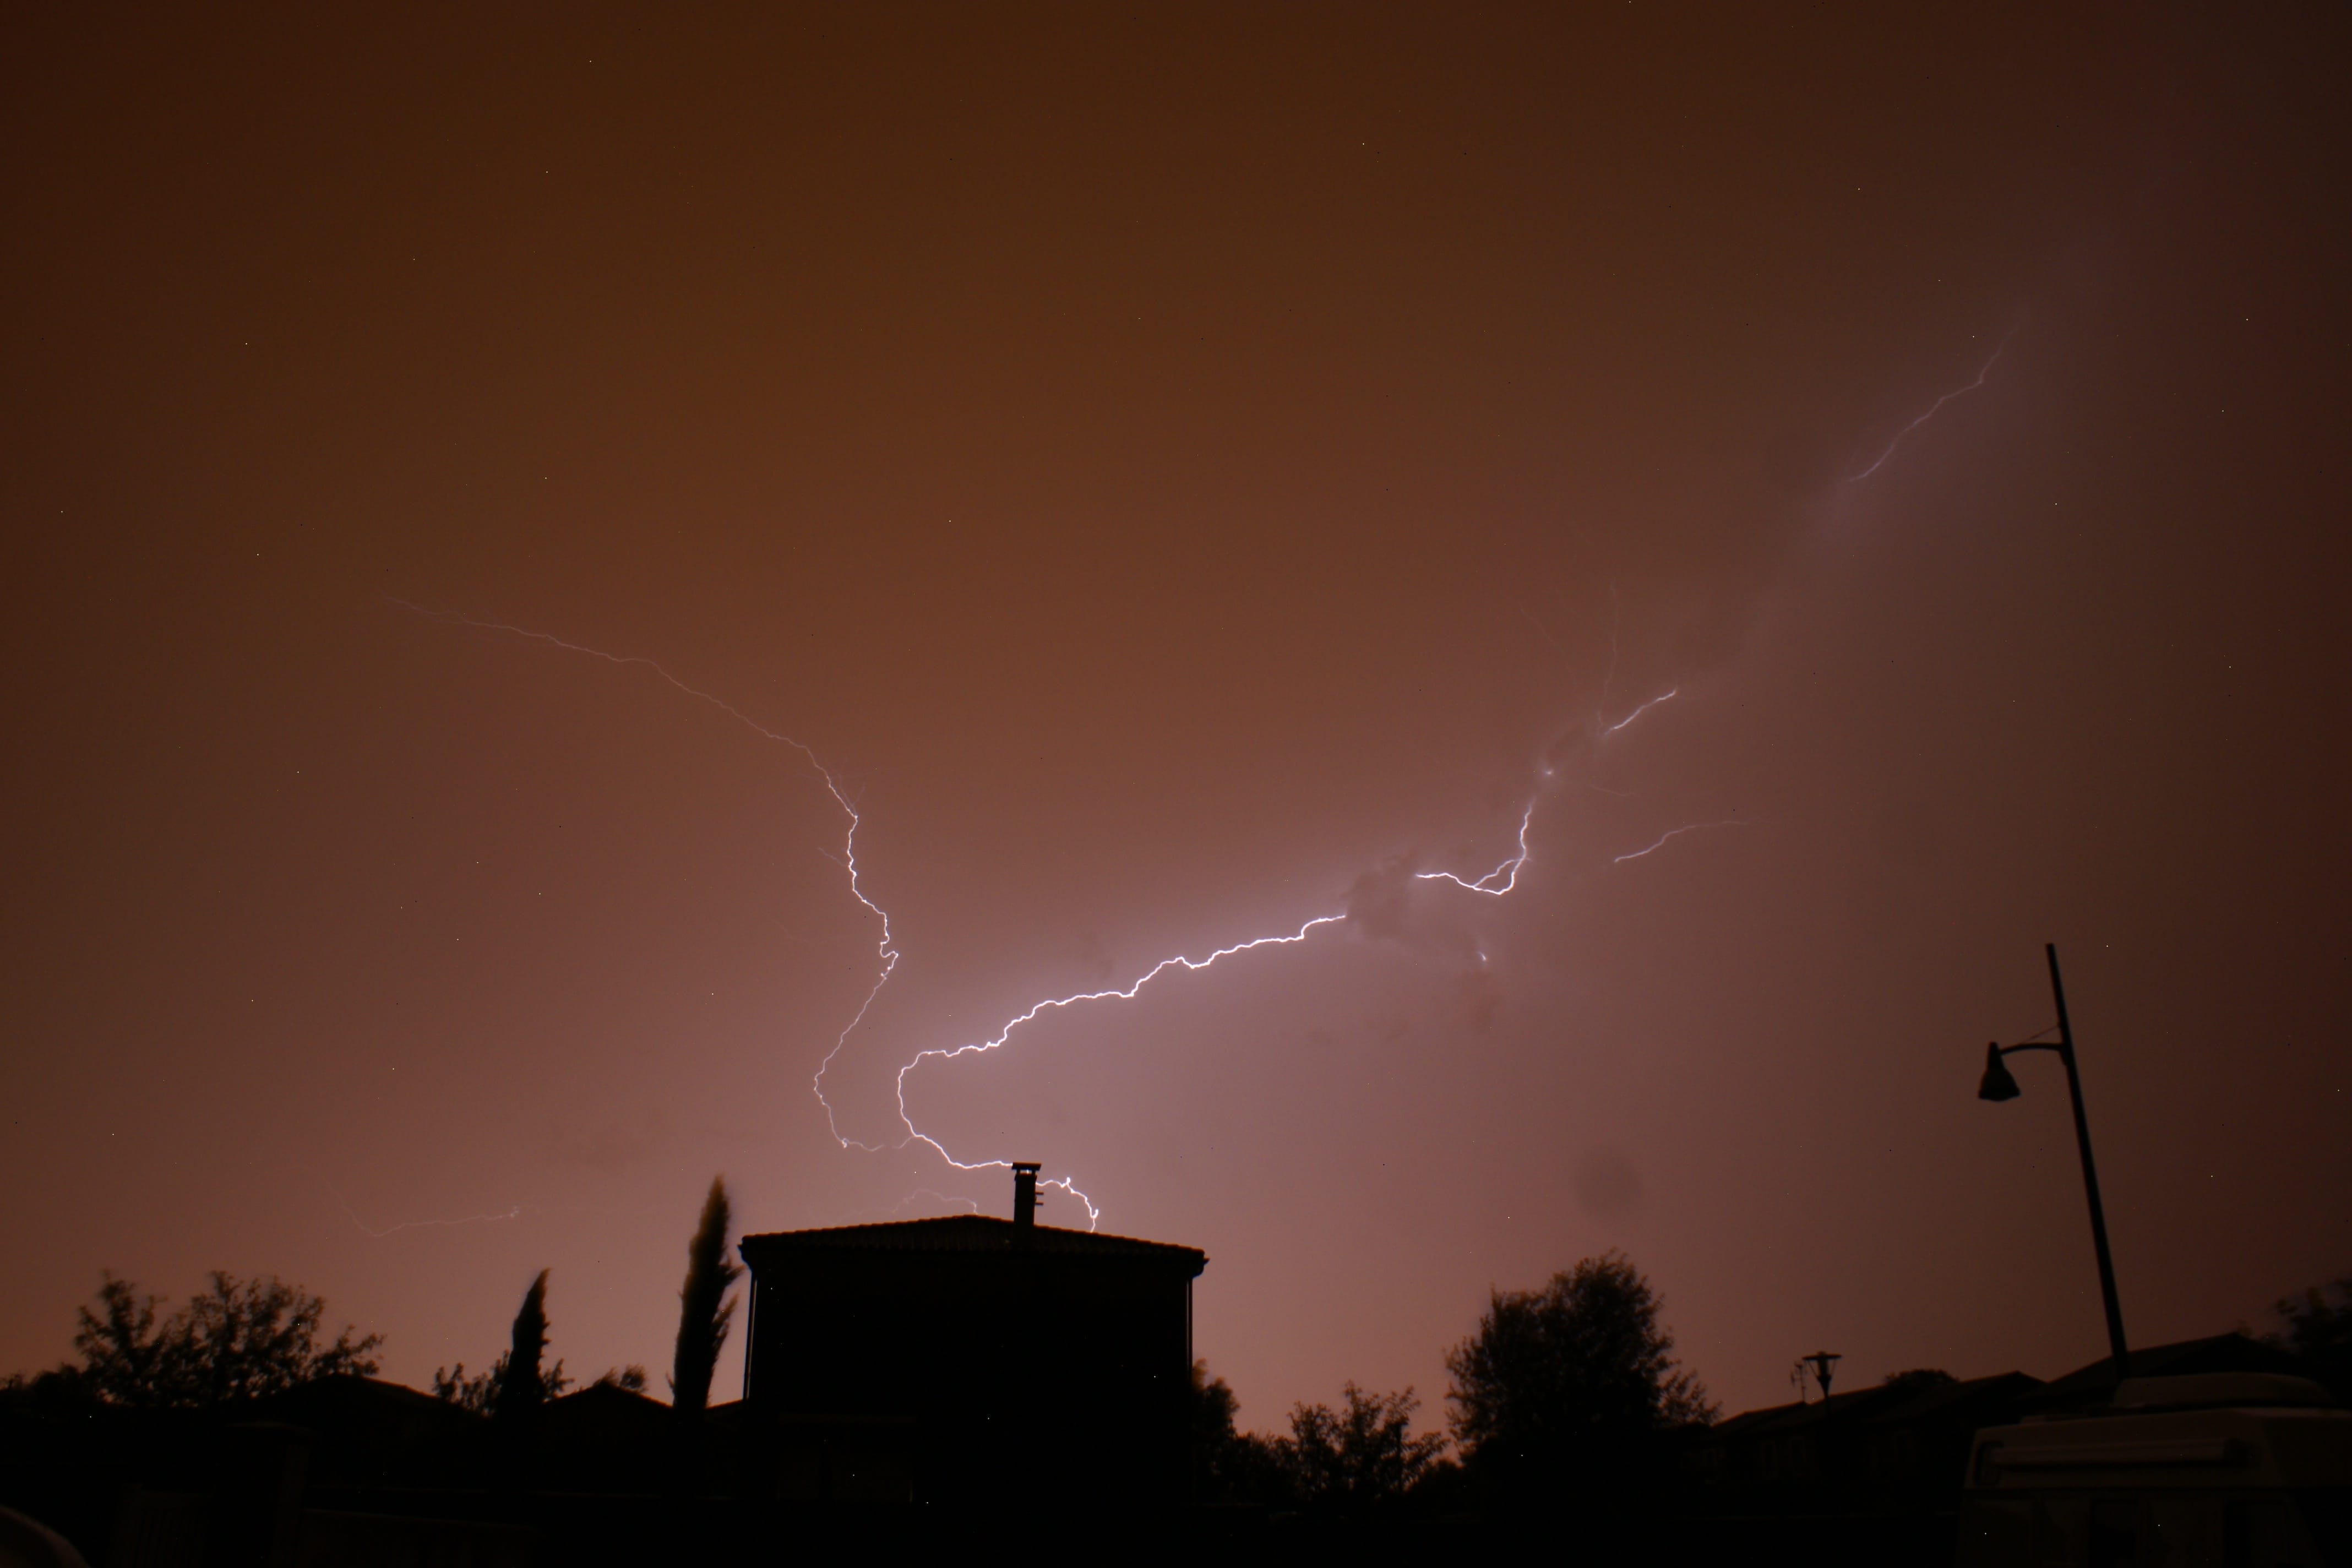 Evacuation de l'orage venteux au-dessus de Poitiers (lumière orangée) vue depuis Ligugé (Vienne) - 28/08/2018 23:14 - Xavier Benoit